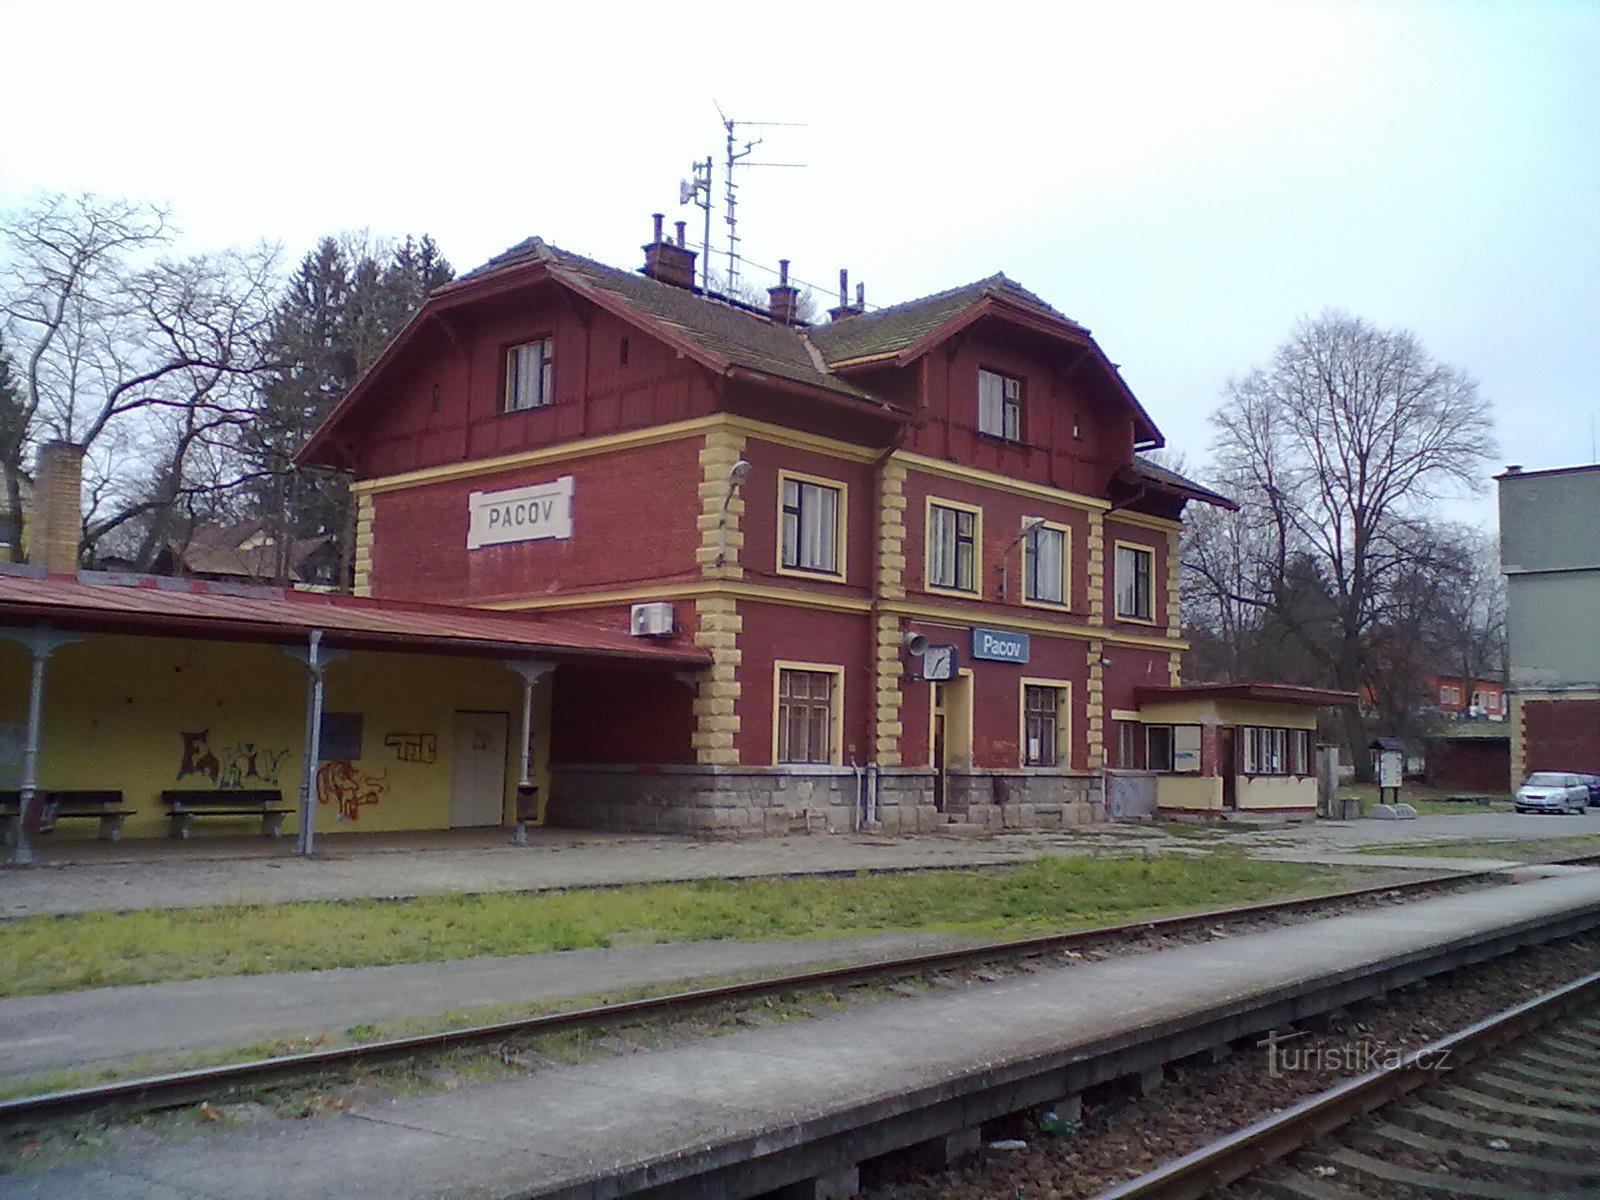 2. Σιδηροδρομικός σταθμός στο Pacov, η αρχή και το τέλος της πεζοπορίας μας.